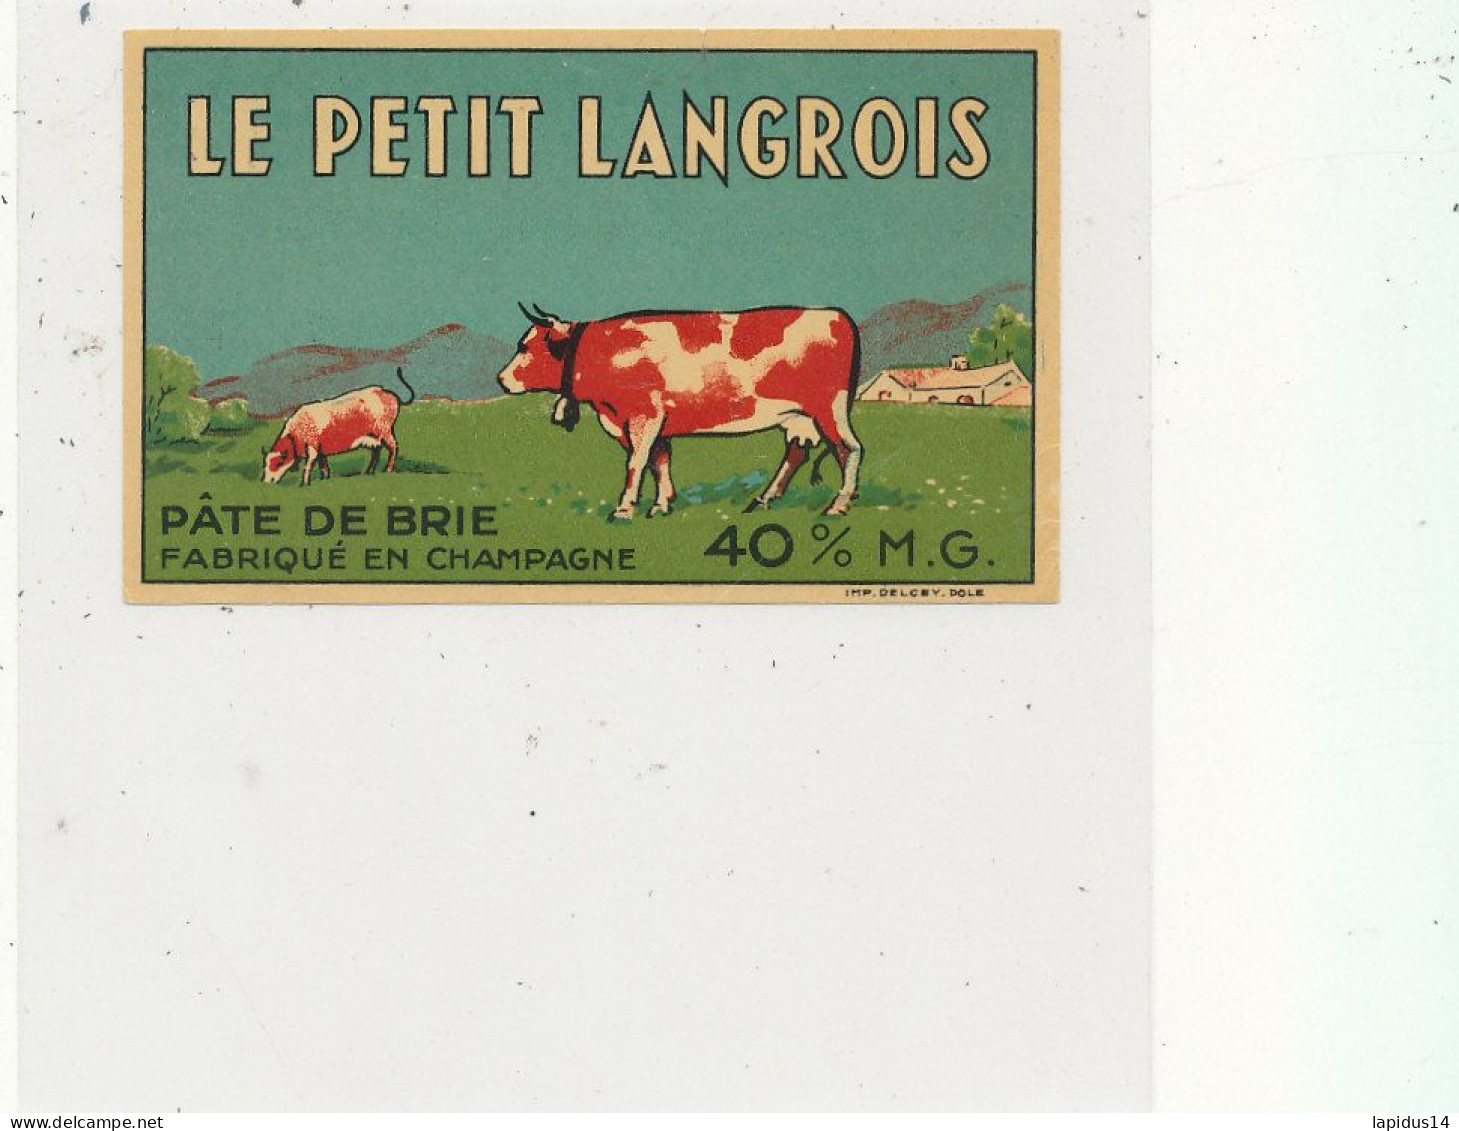 GG 435 / ETIQUETTE FROMAGE   PATE DE BRIE   LE PETIT LANGROIS  FABRIQUE EN CHAMPAGNE - Käse